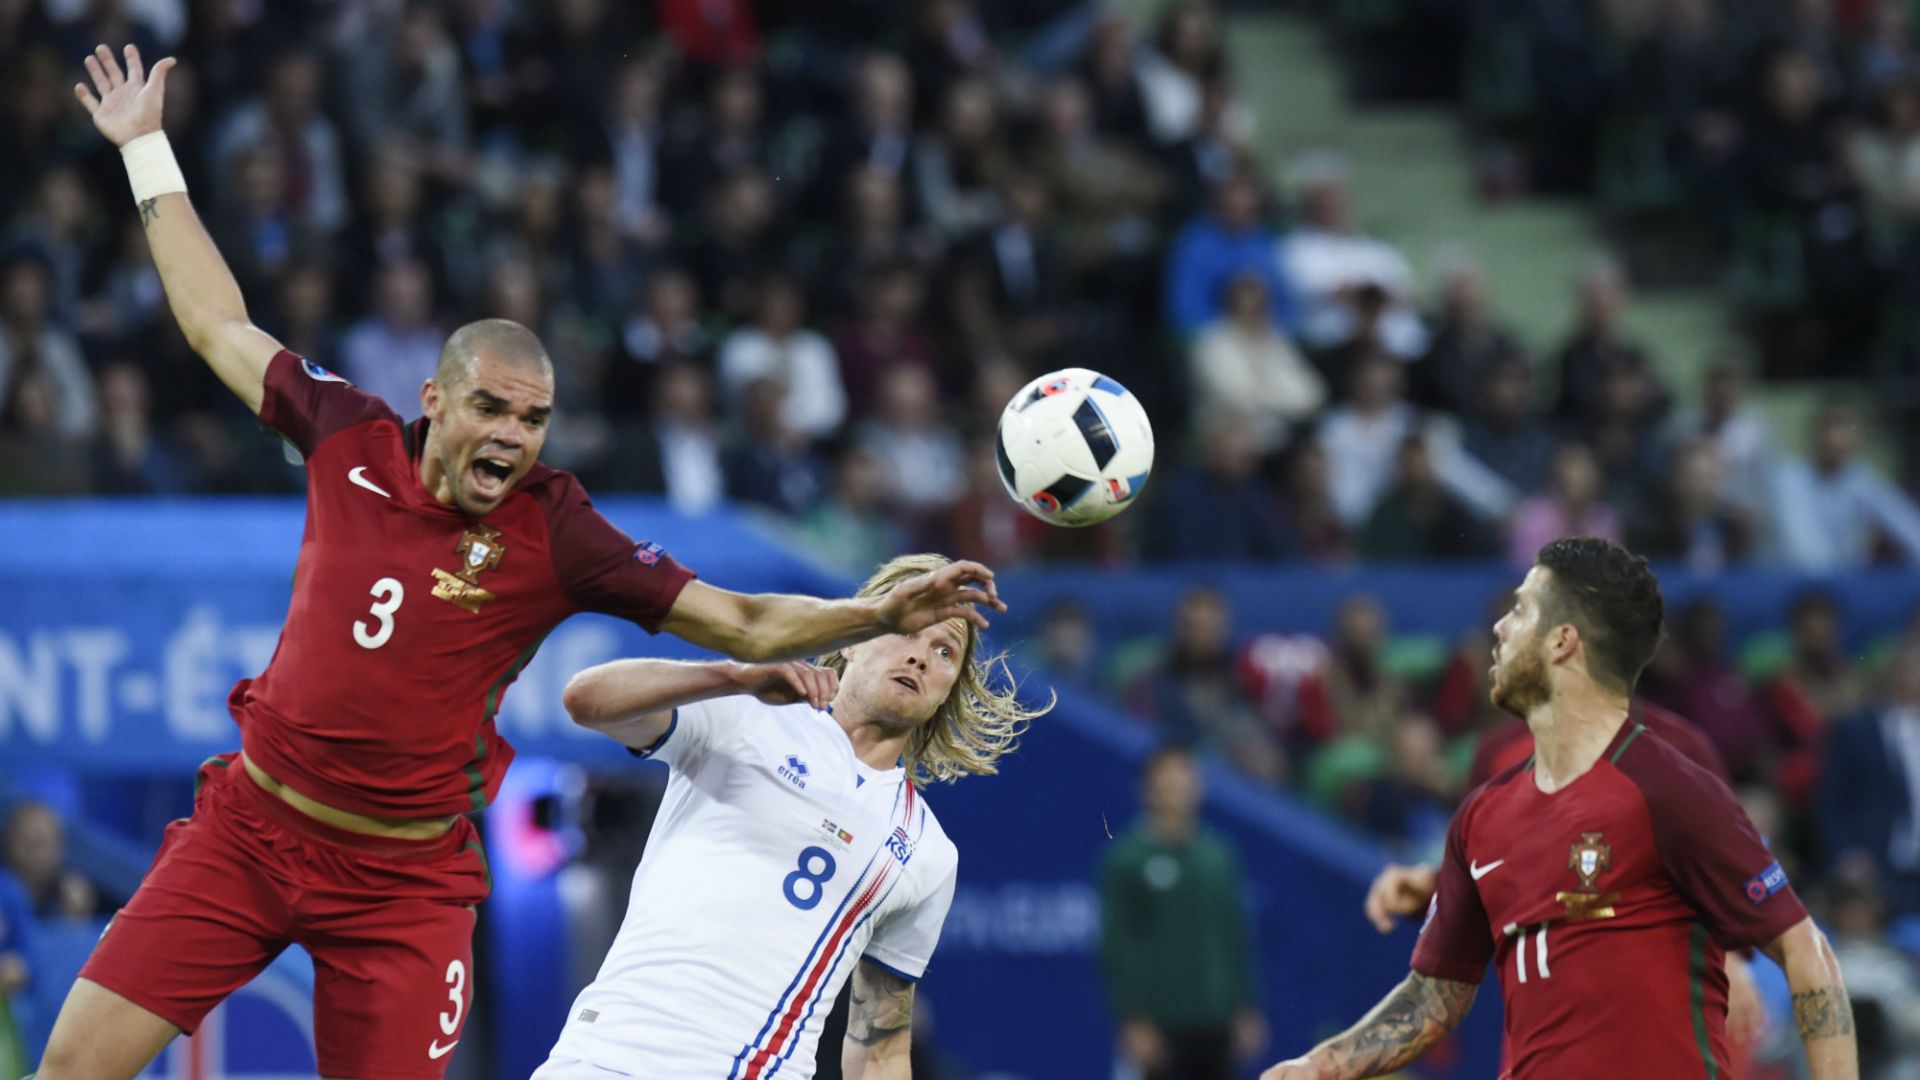 Birkir Bjarnason Pepe Portugal Iceland Euro 2016